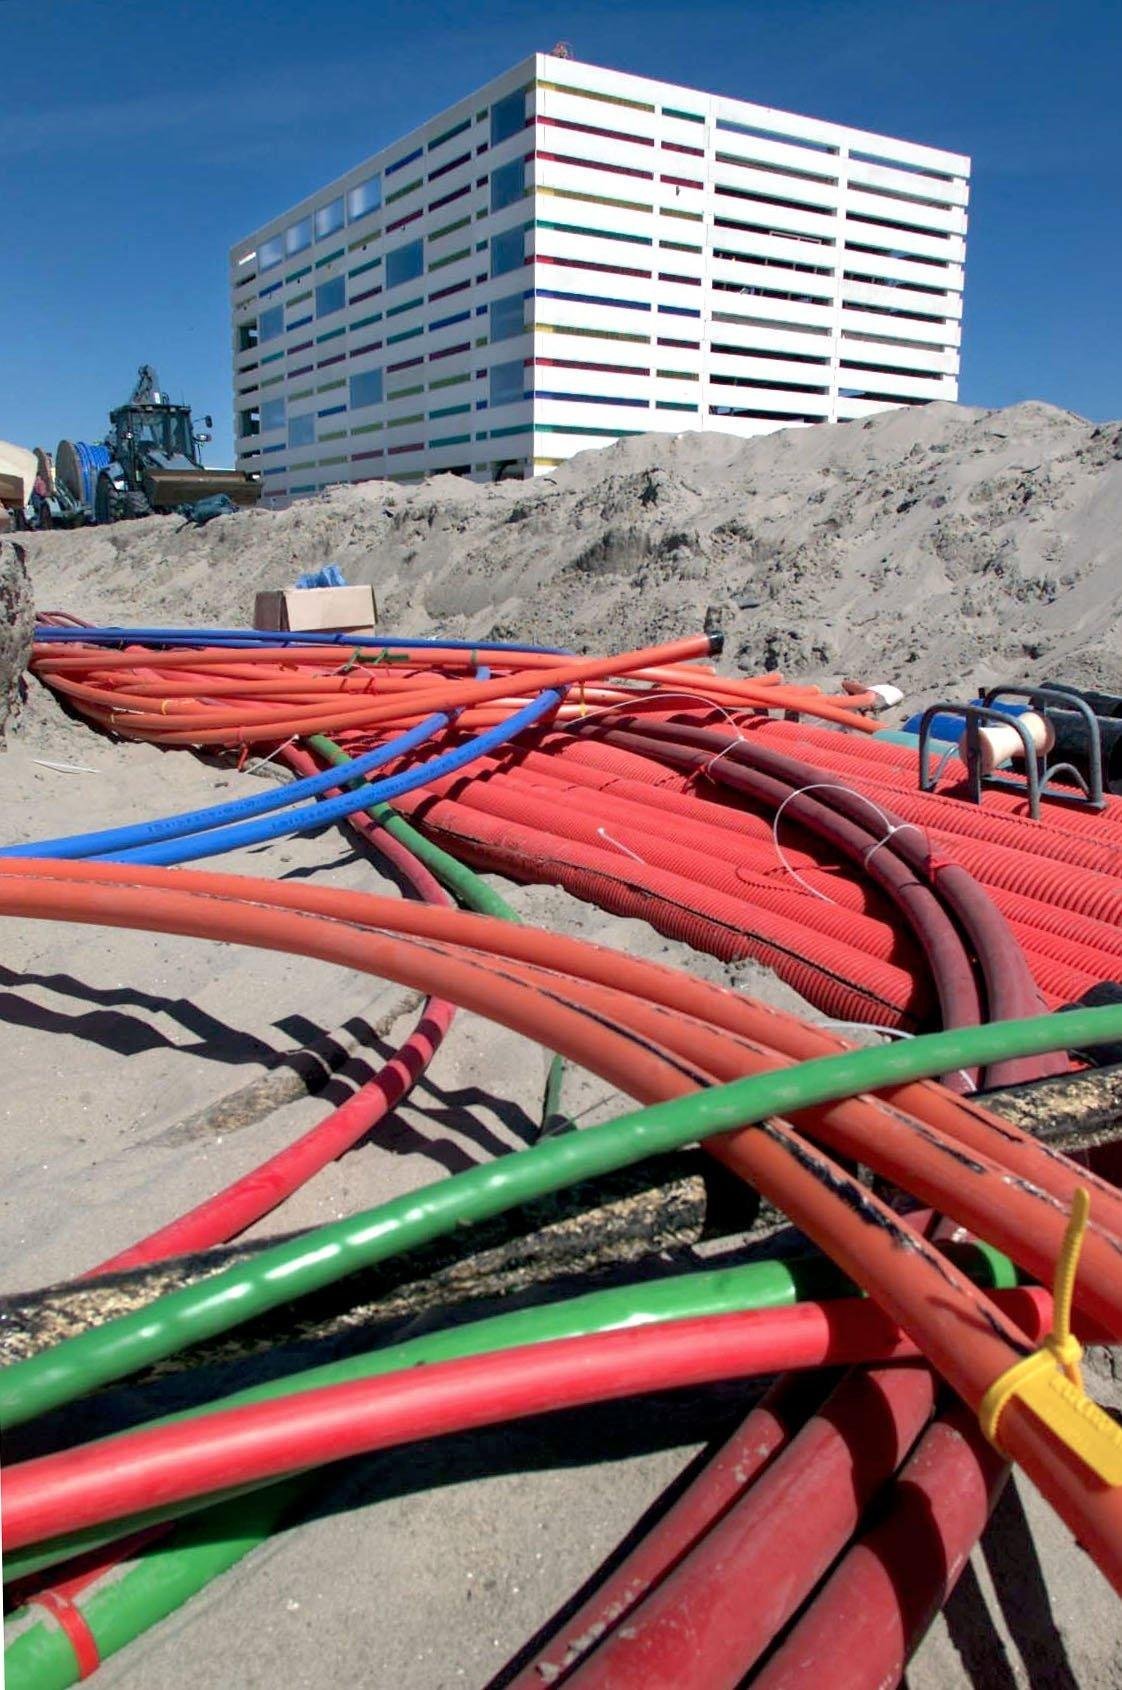 2001-05-23 08:28:20 NLD-200010523-AMSTERDAM: Glasvezel kabels voor de nieuwe KPN-telefooncentrale op het eiland IJburg. ANPFOTO -ROBIN UTRECHT